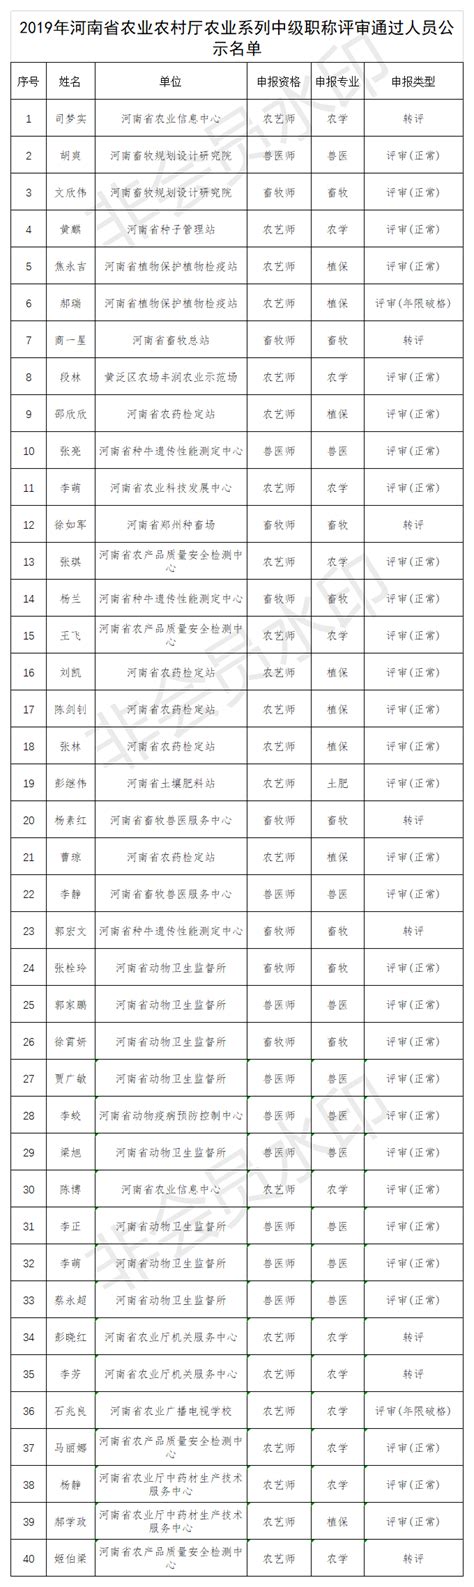 第一批城市更新试点名单出炉 北京、厦门、景德镇等21城入选_中金在线财经号